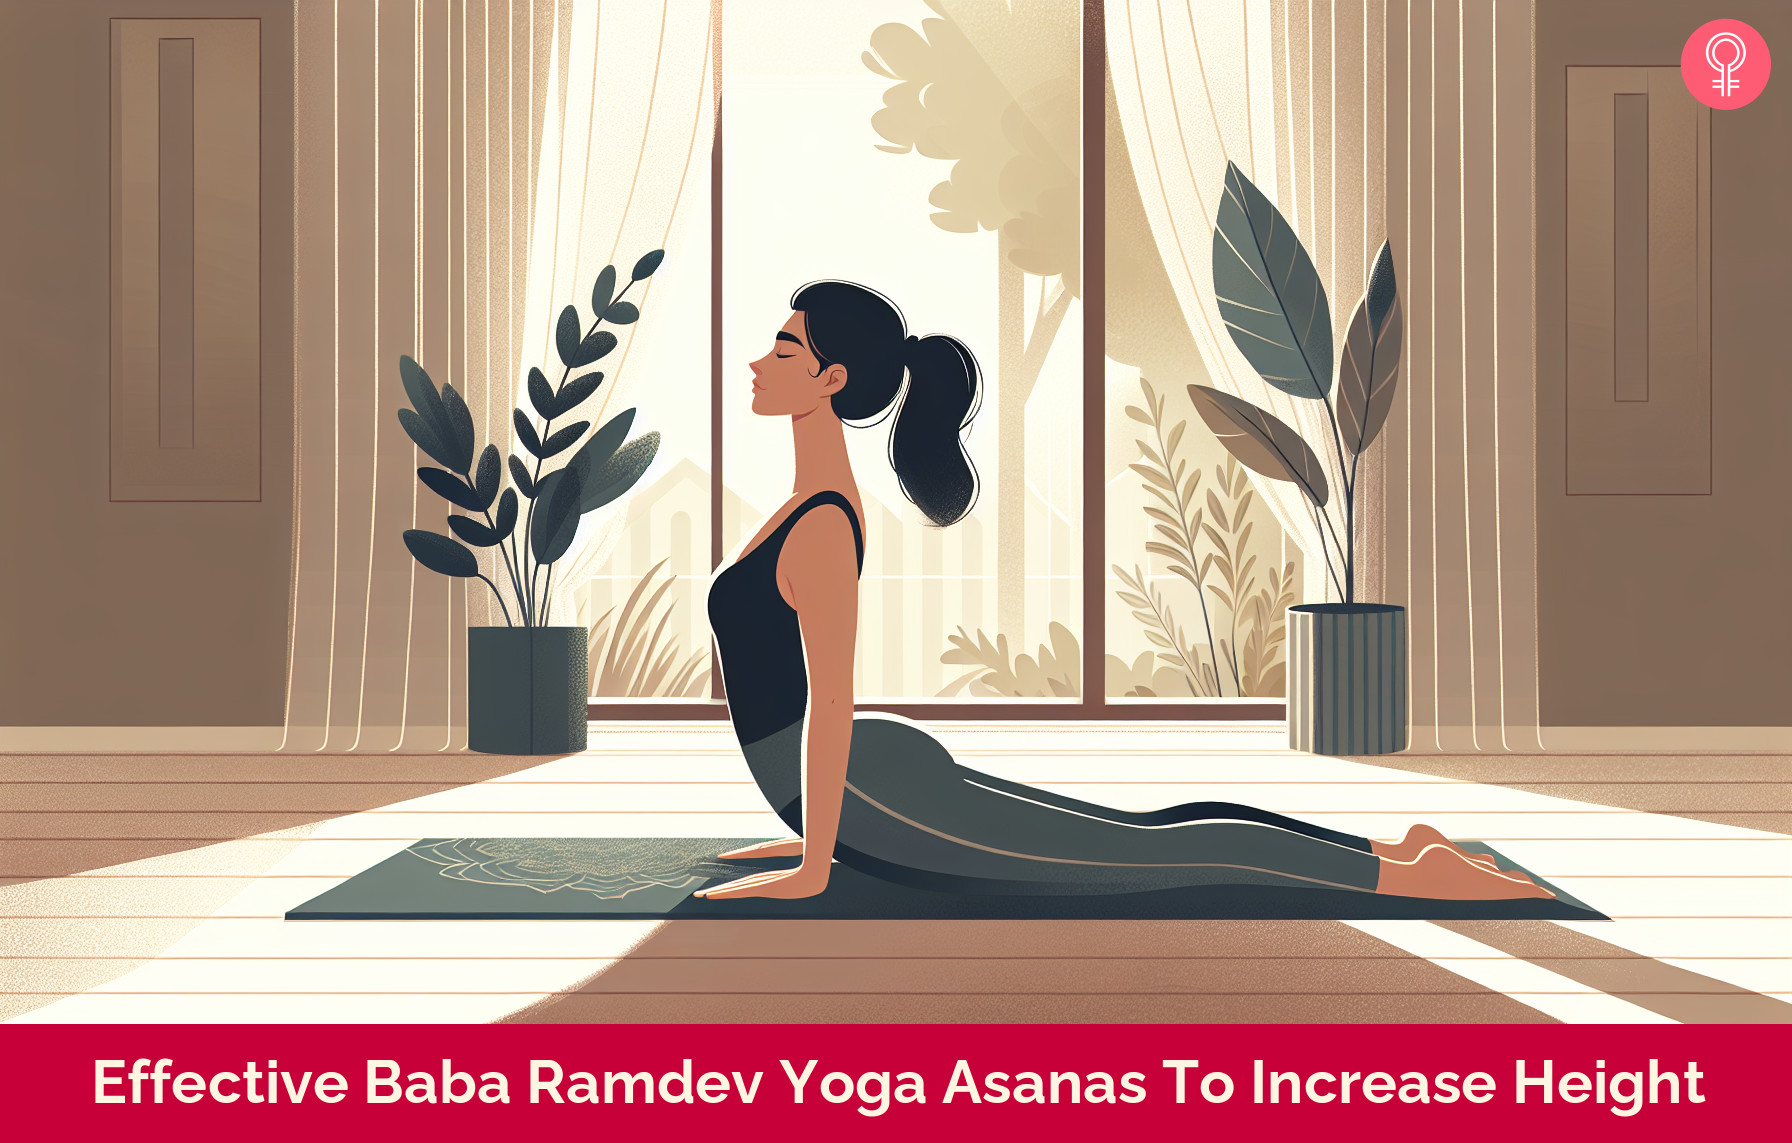 Baba Ramdev Yoga Asanas To Increase Height